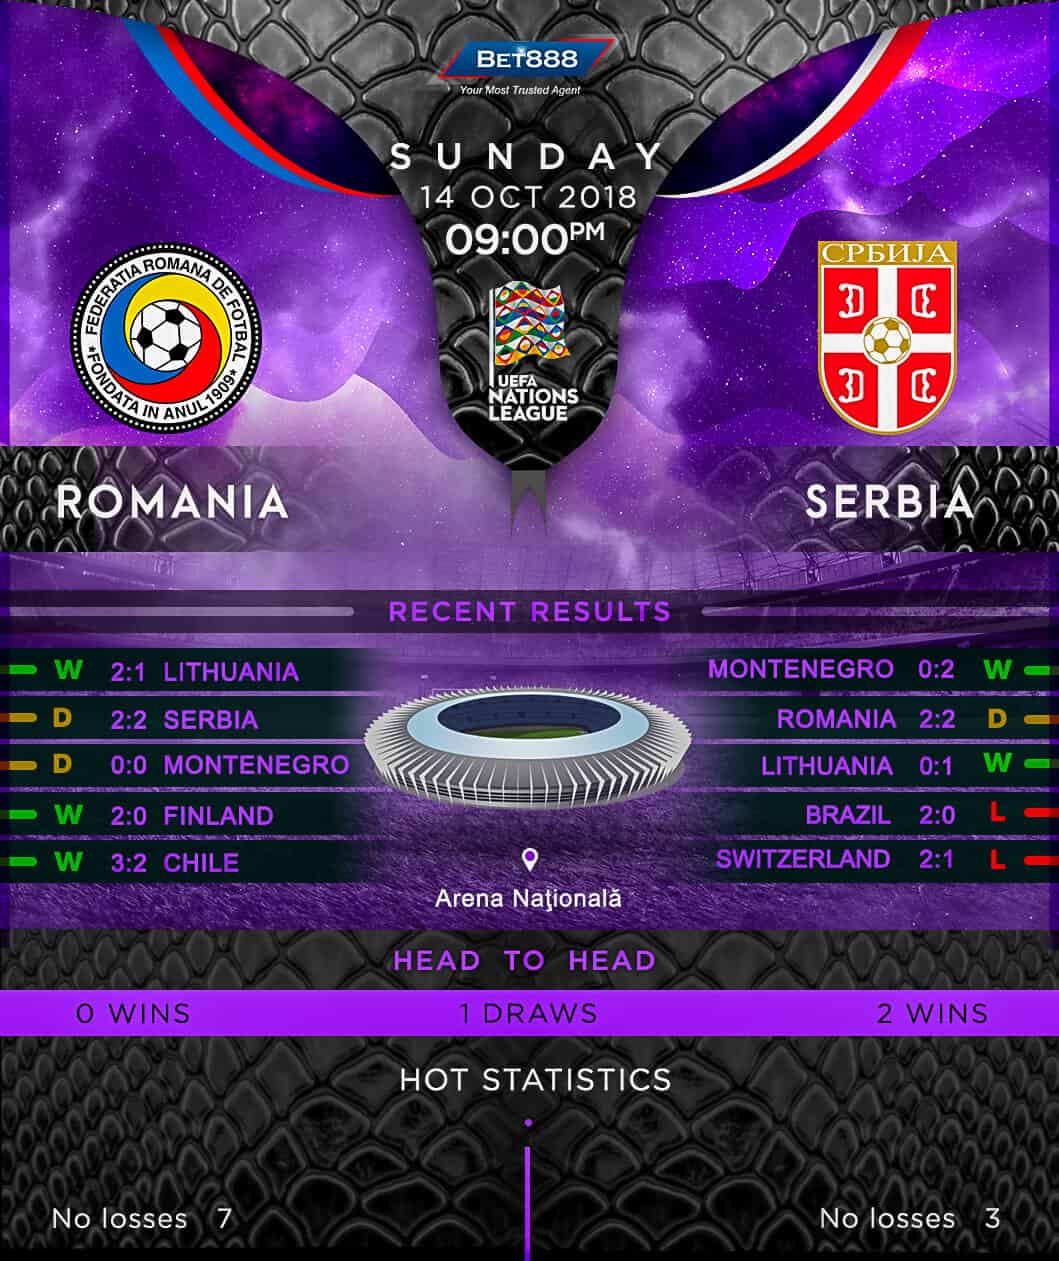 Romania vs Serbia 14/10/18